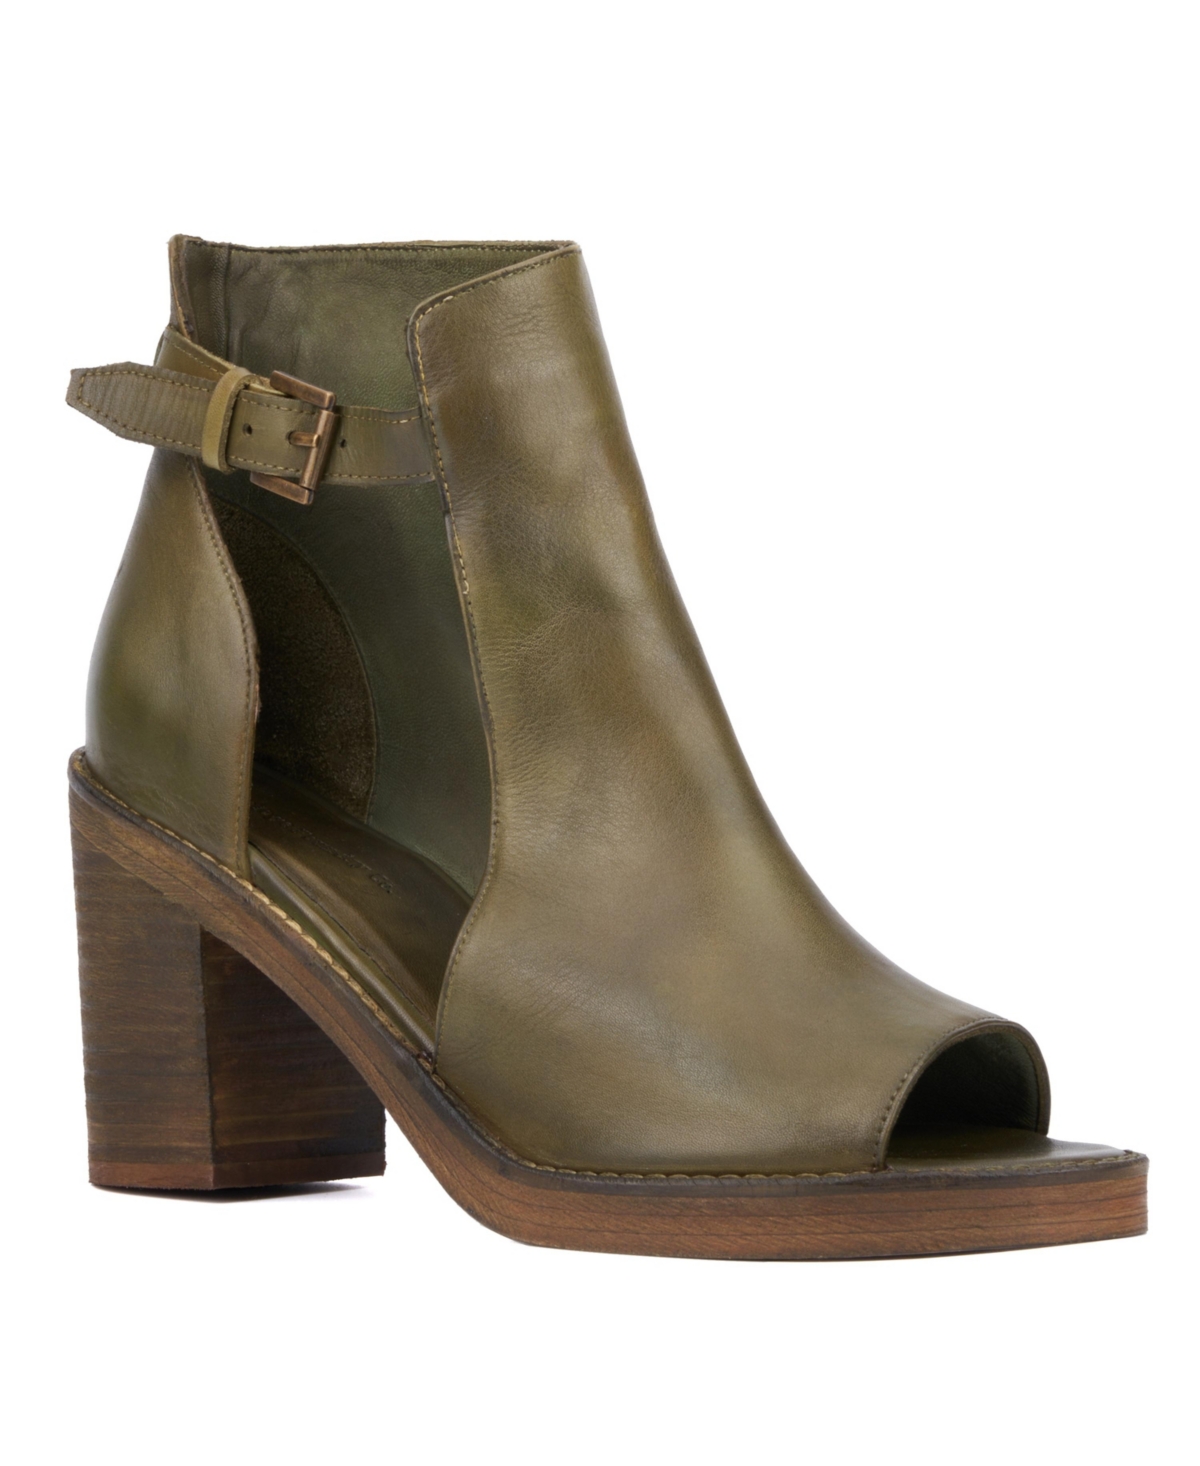 Vintage Foundry Co Women's Laverne Heel Sandal - Olive